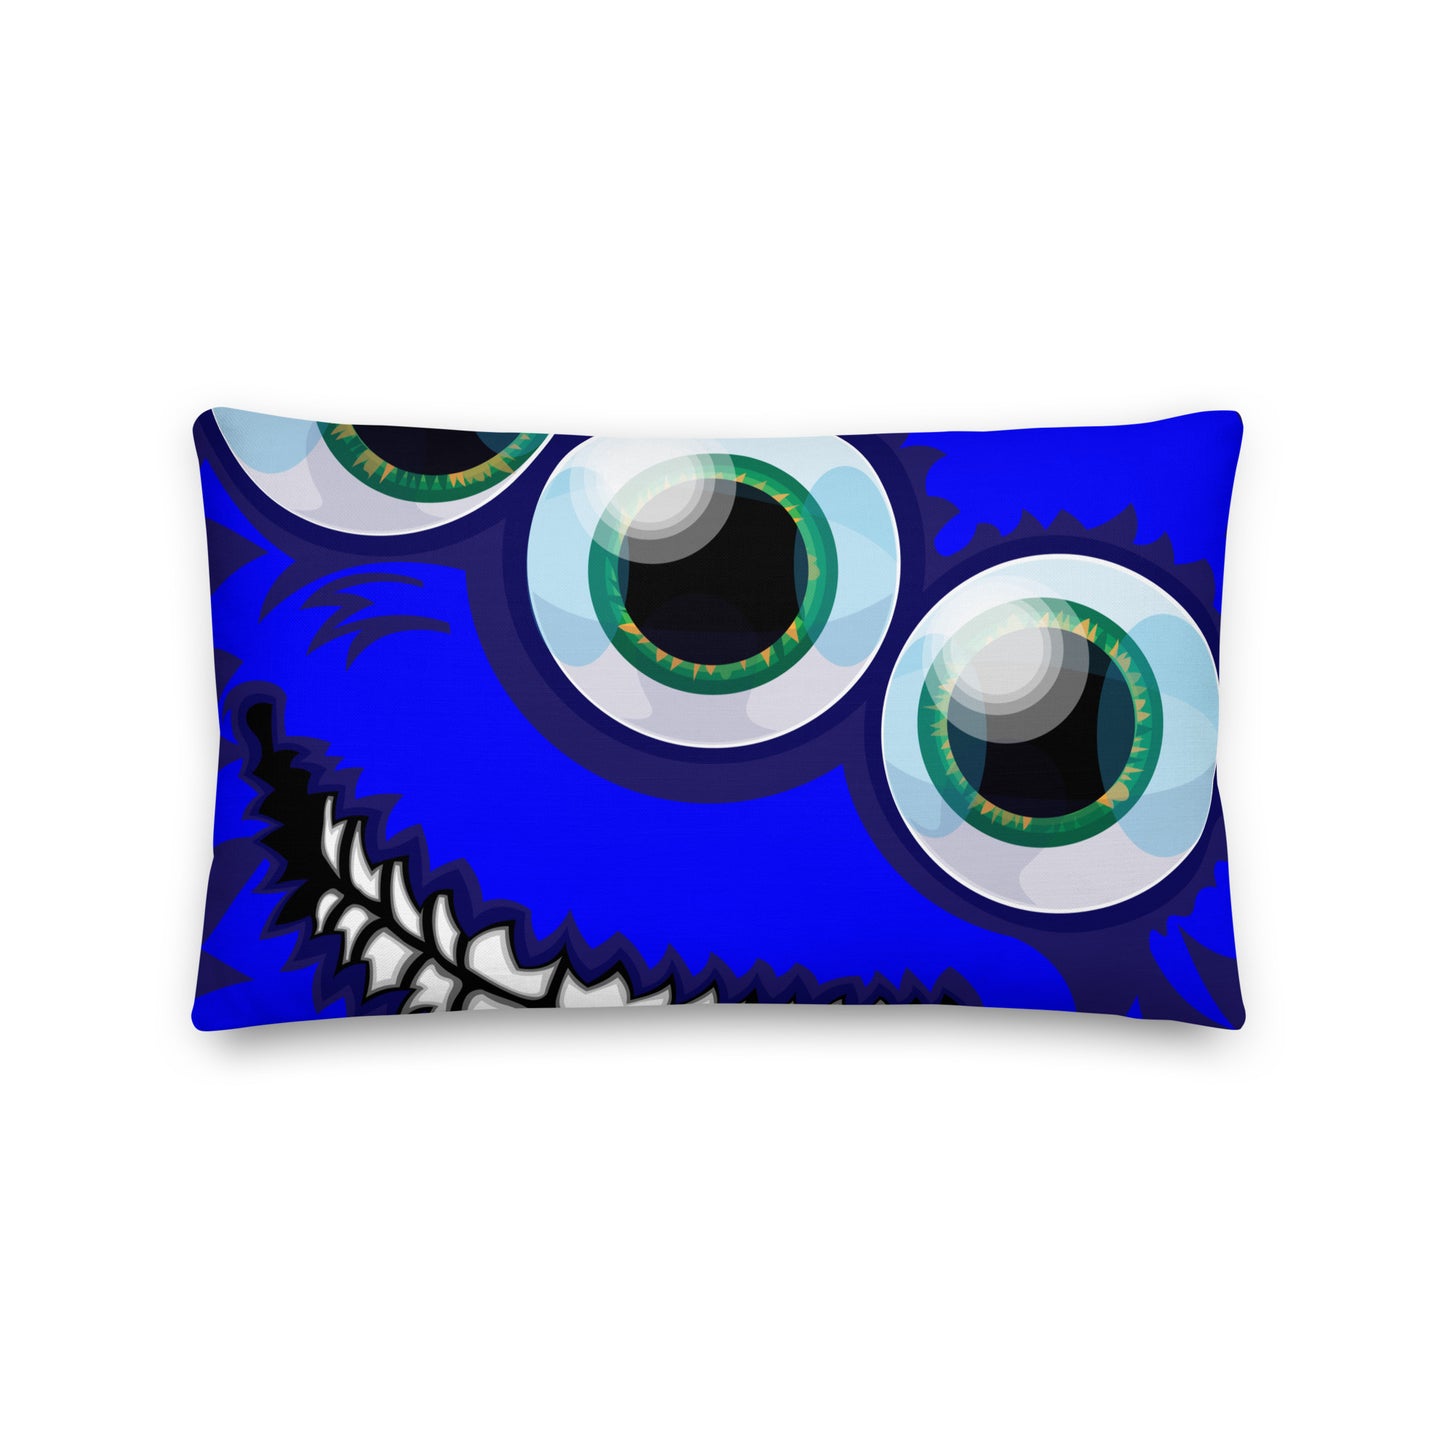 BLOOEY MAGOOEY - Pillow monster